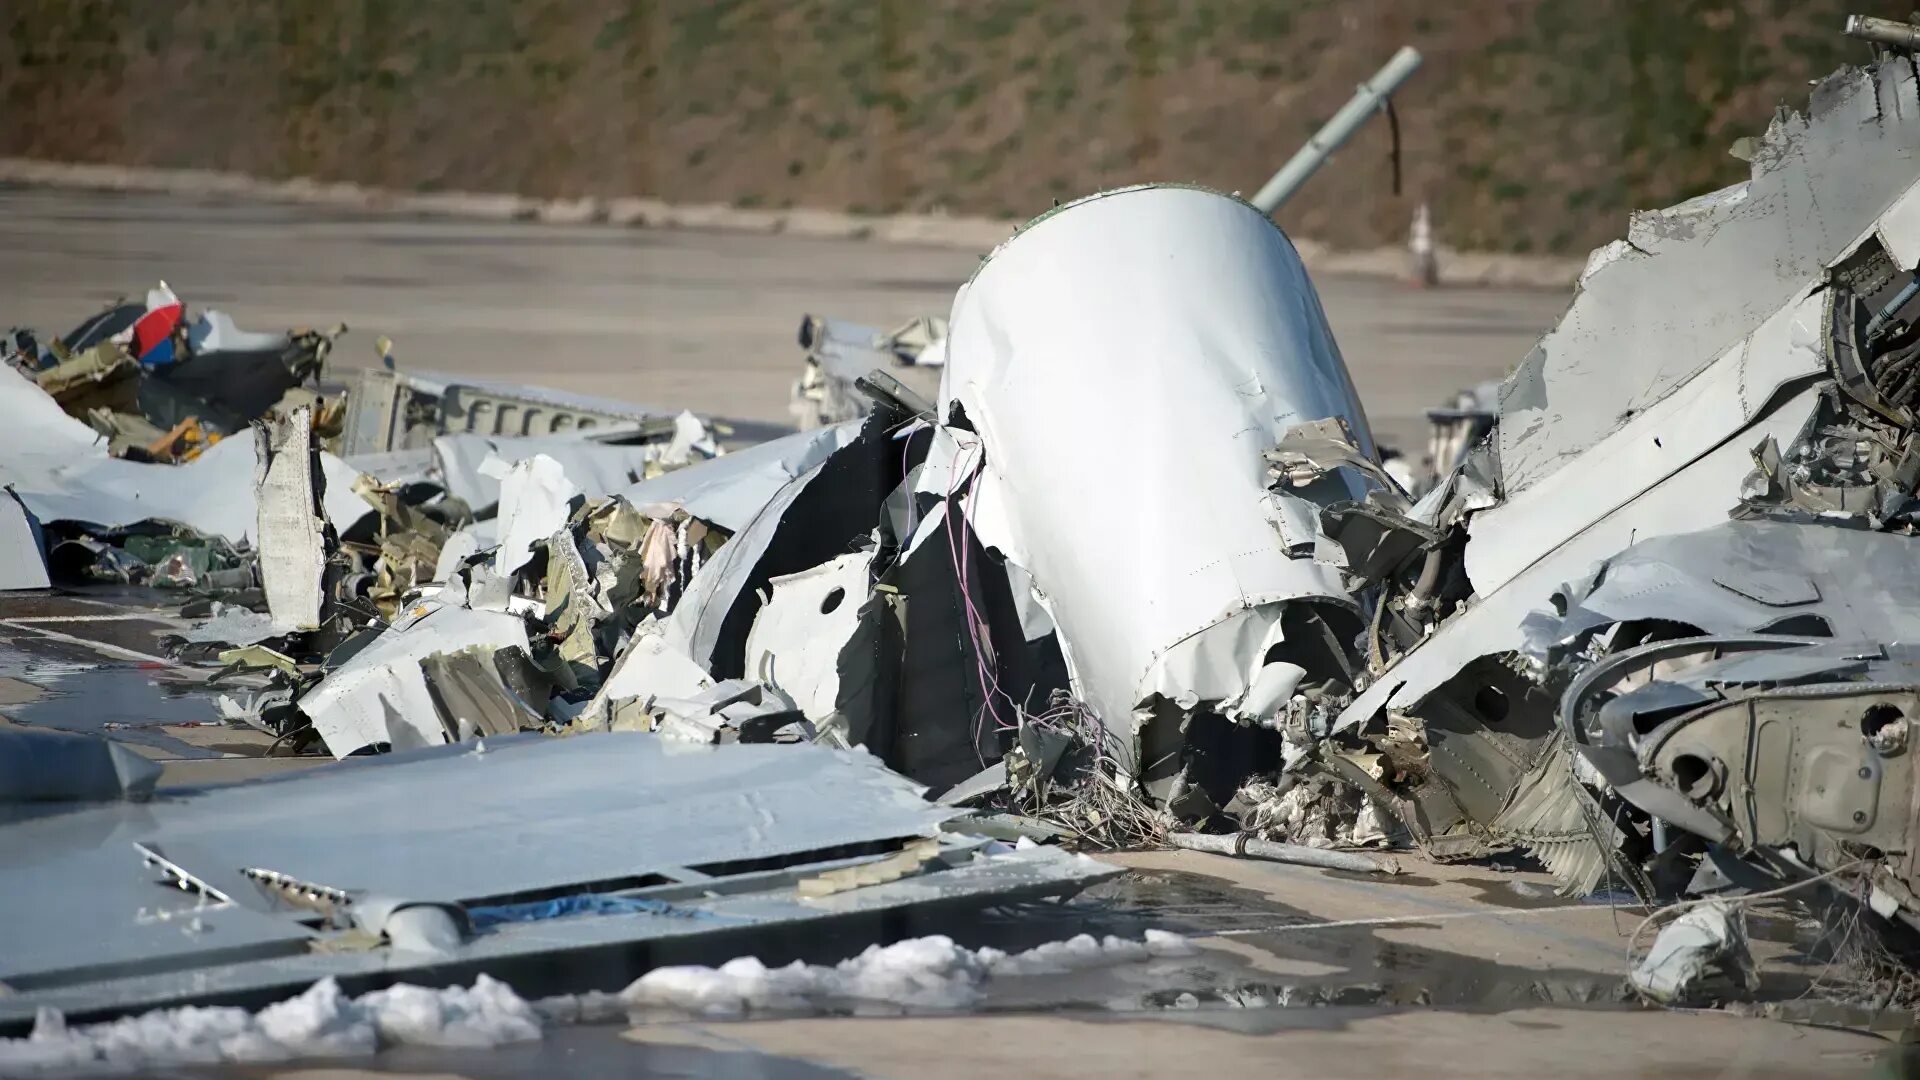 Самолет разбился причины. Катастрофа ту-154 под Сочи. Крушение ту 154 в Сочи. Ту 154 катастрофа Сочи 2016. Катастро́фа ту-154 под Со́чи.